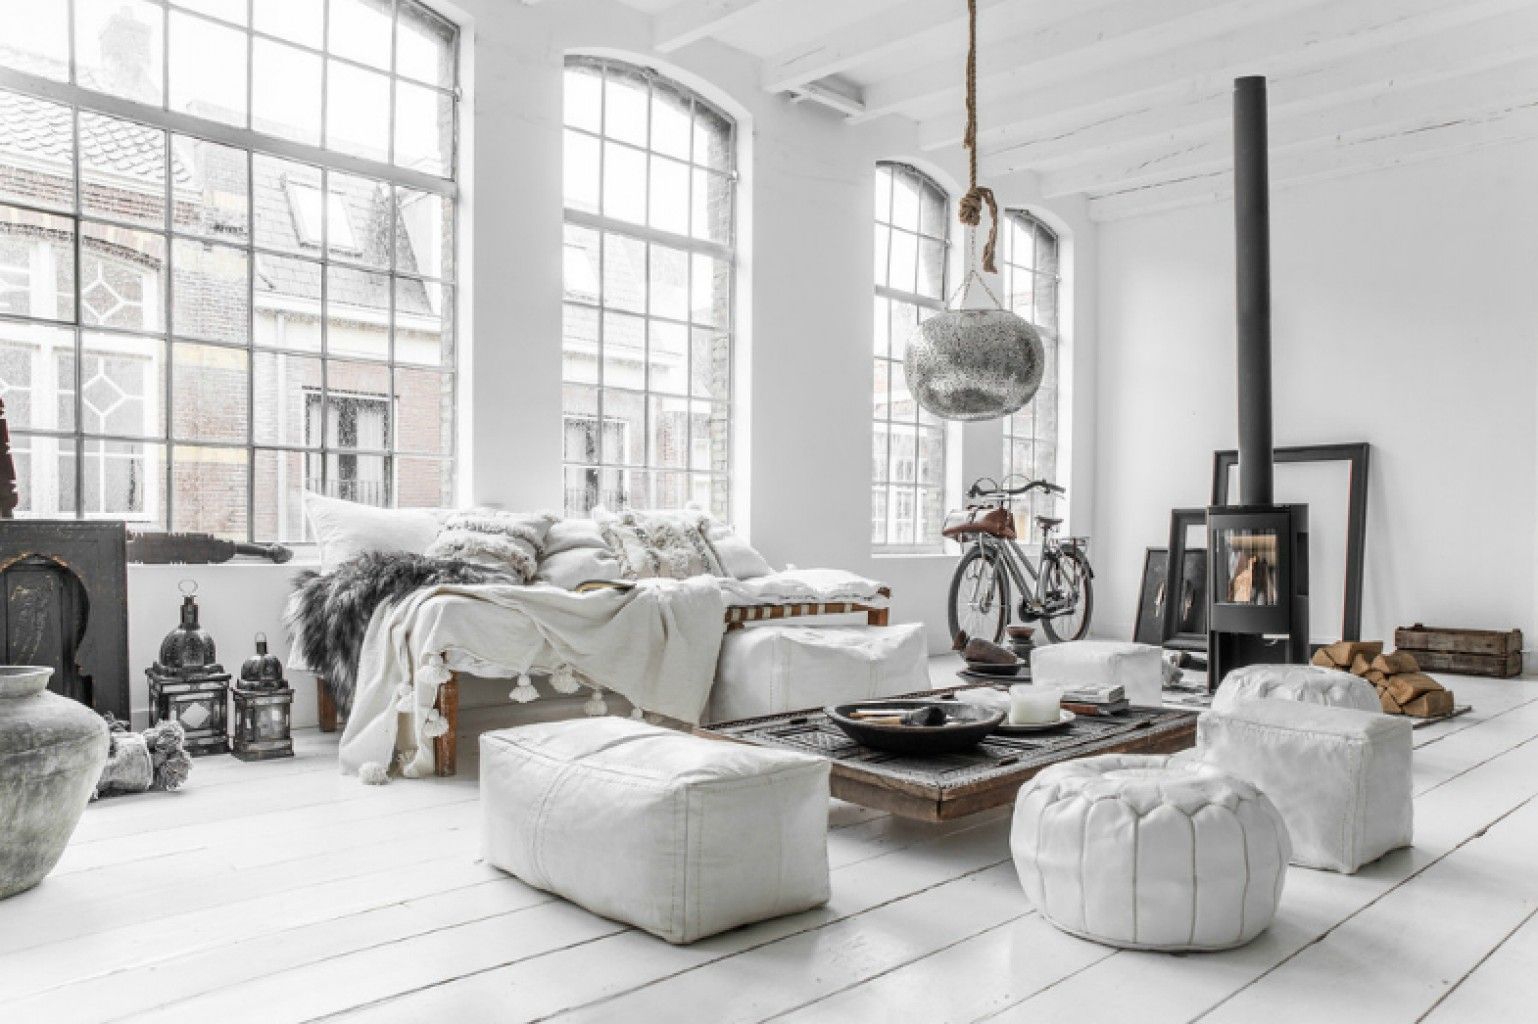 Ánh sáng là yếu tố quan trọng trong thiết kế nội thất Scandinavian- HOME68